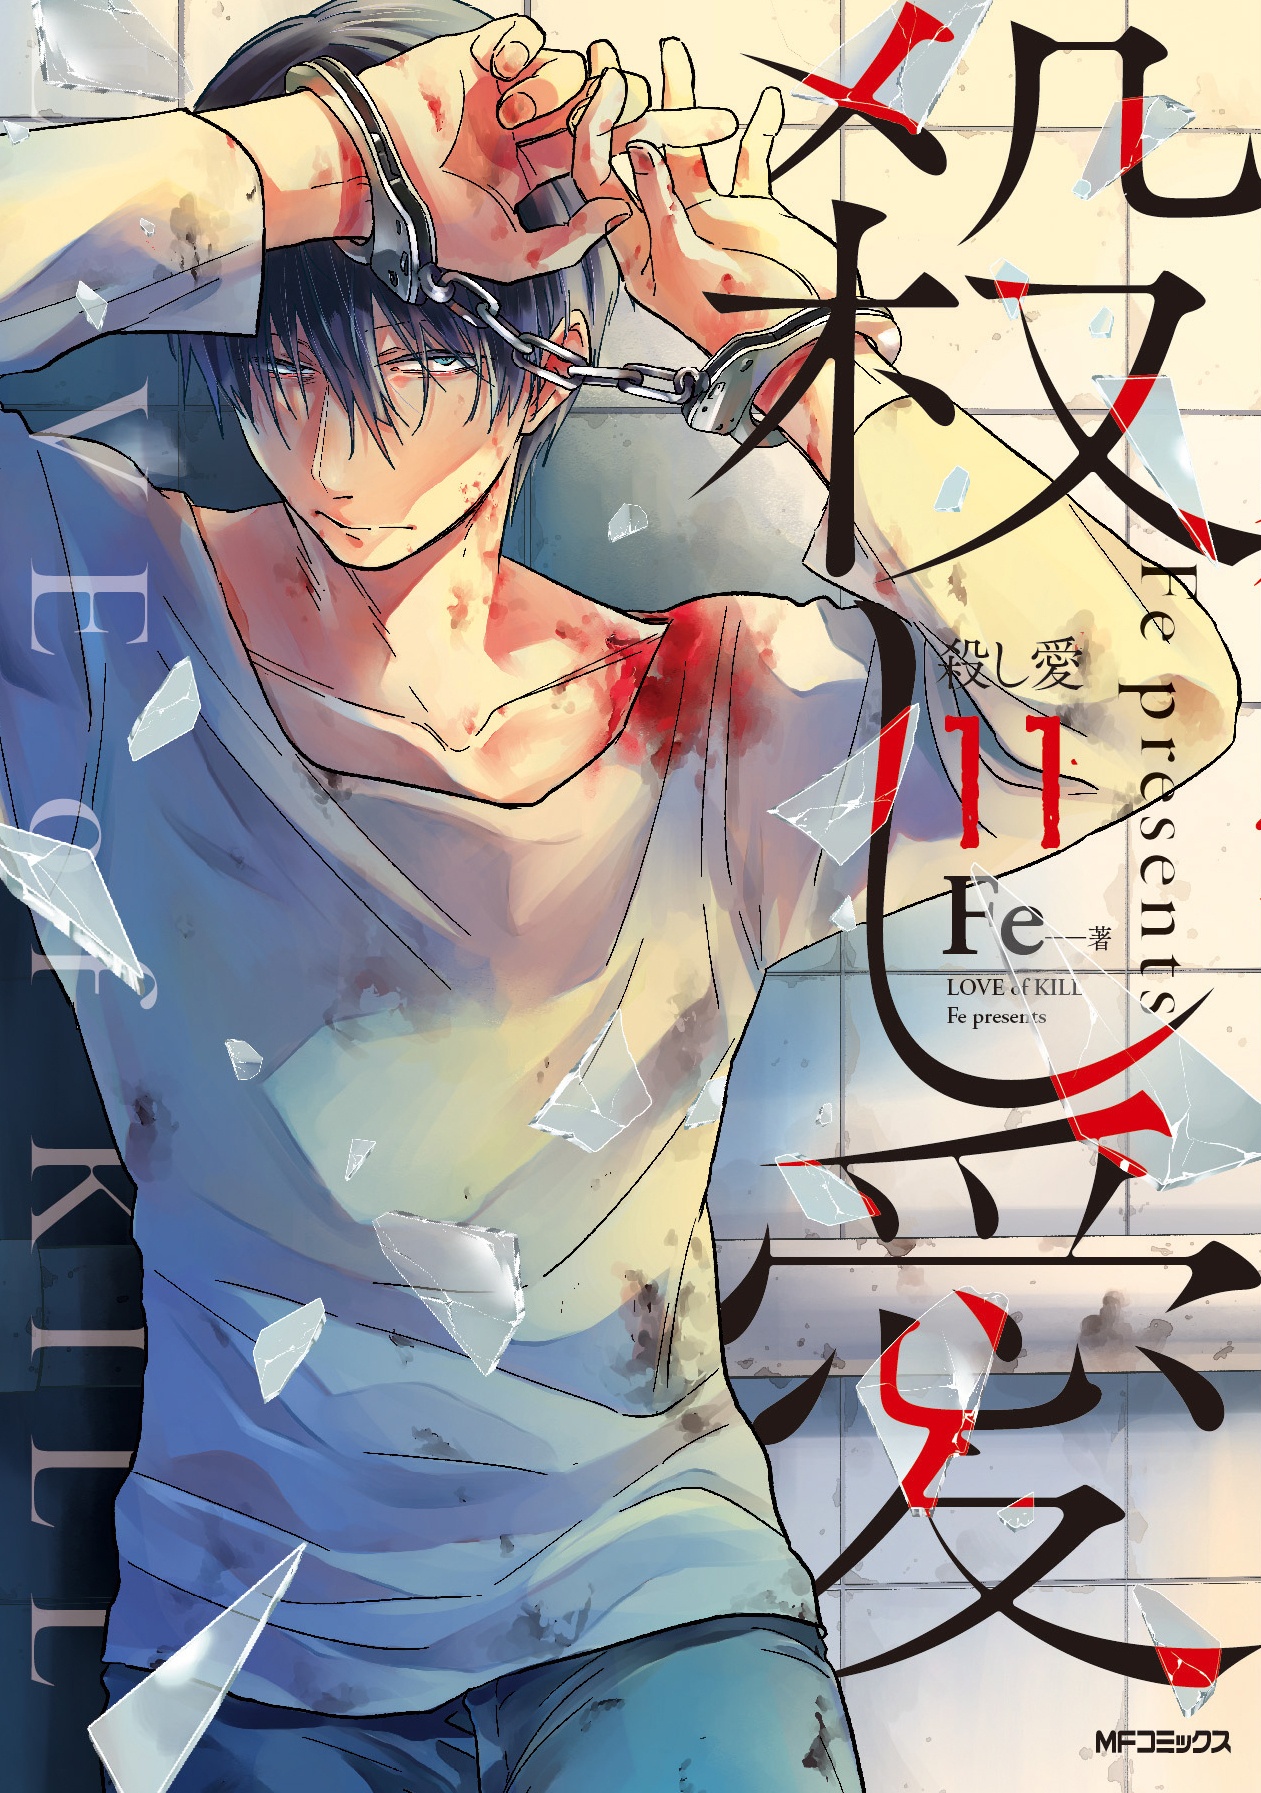 koroshi ai (love of kill) anime - manga volume 11